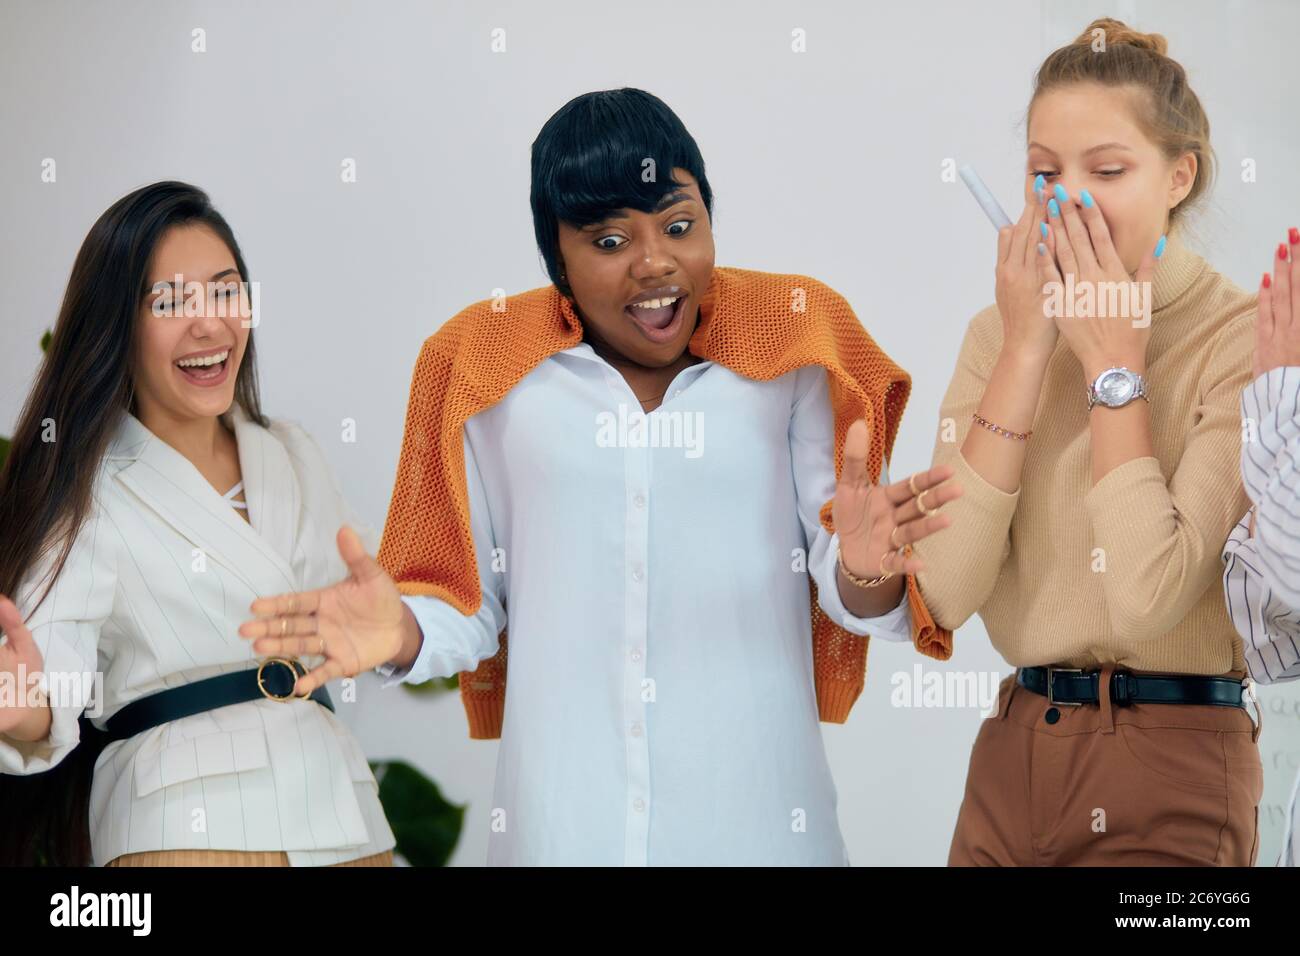 Diverse junge Frauen überrascht und glücklich, im Business-Wettbewerb zu  gewinnen. Tragen Casual Kleidung zusammen im Büro Stockfotografie - Alamy